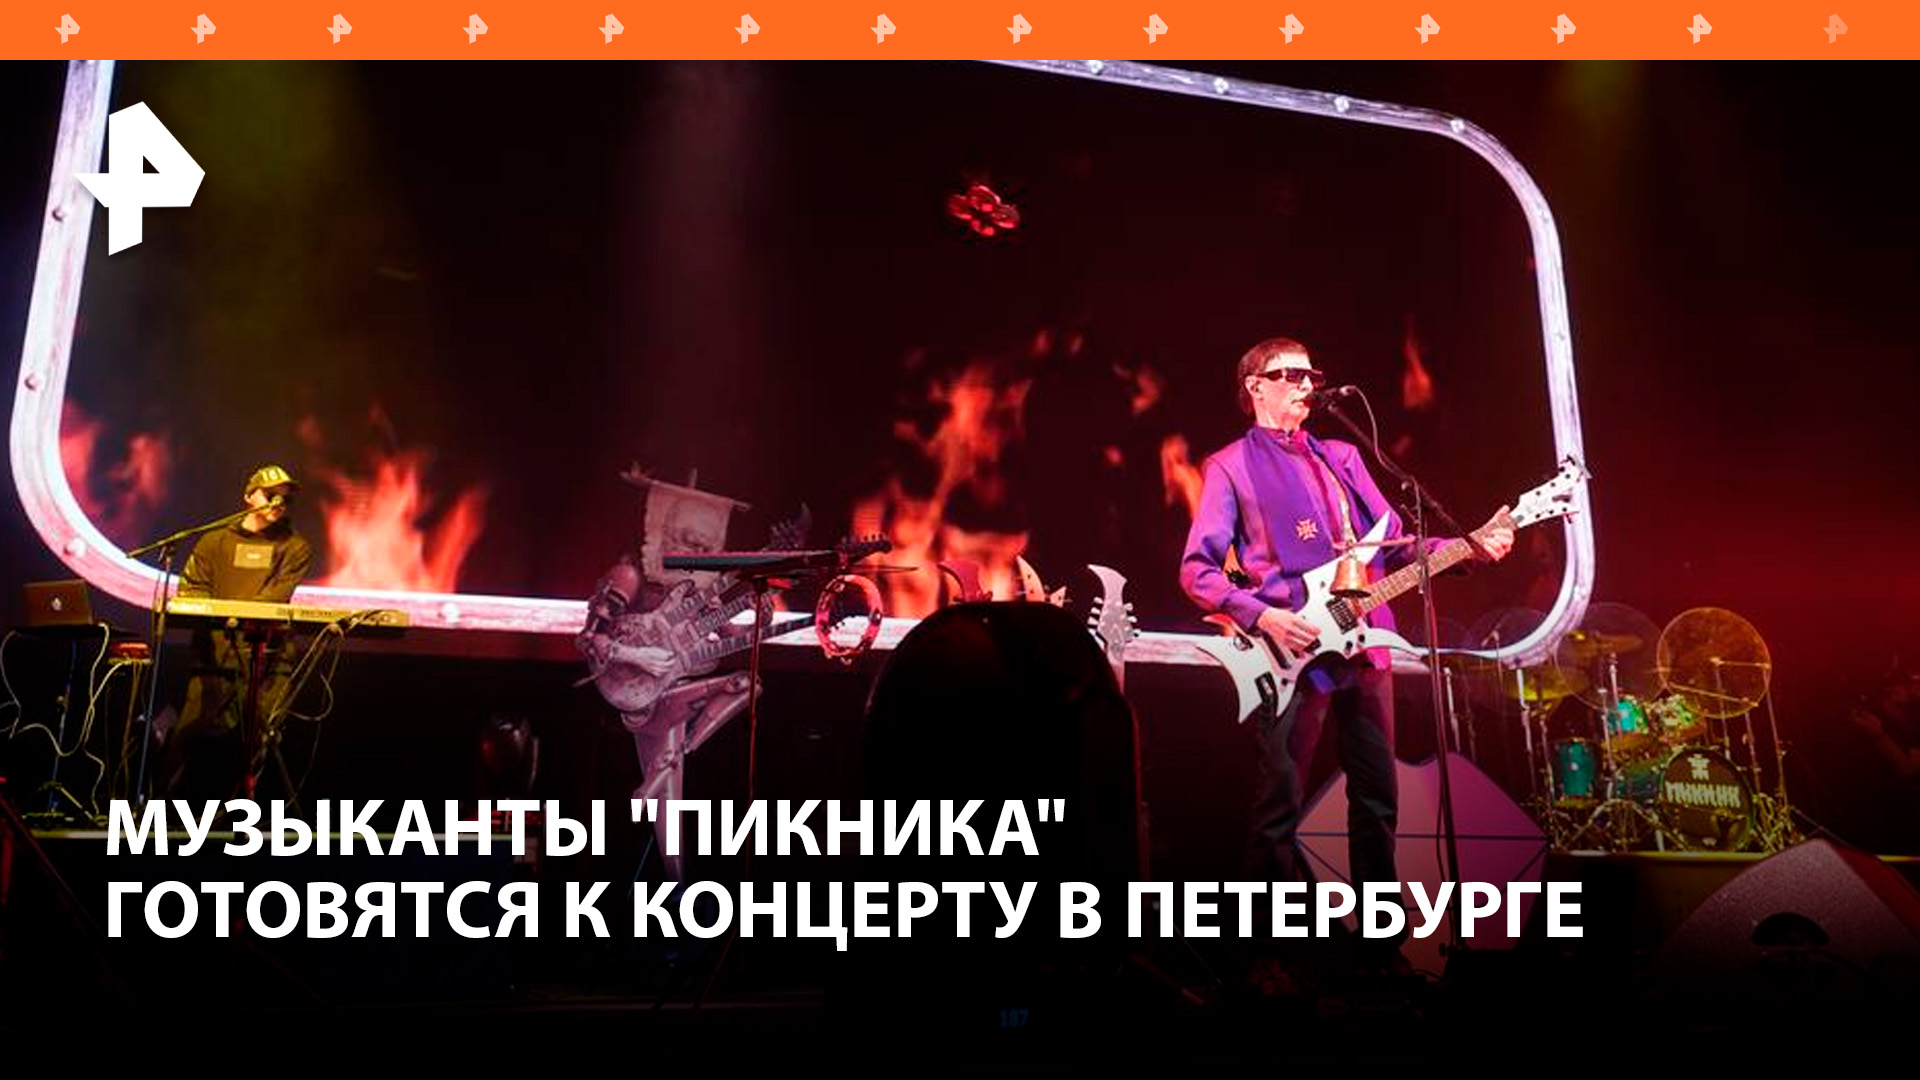 Музыканты "Пикника" готовятся к концерту в память о жертвах теракта / РЕН Новости